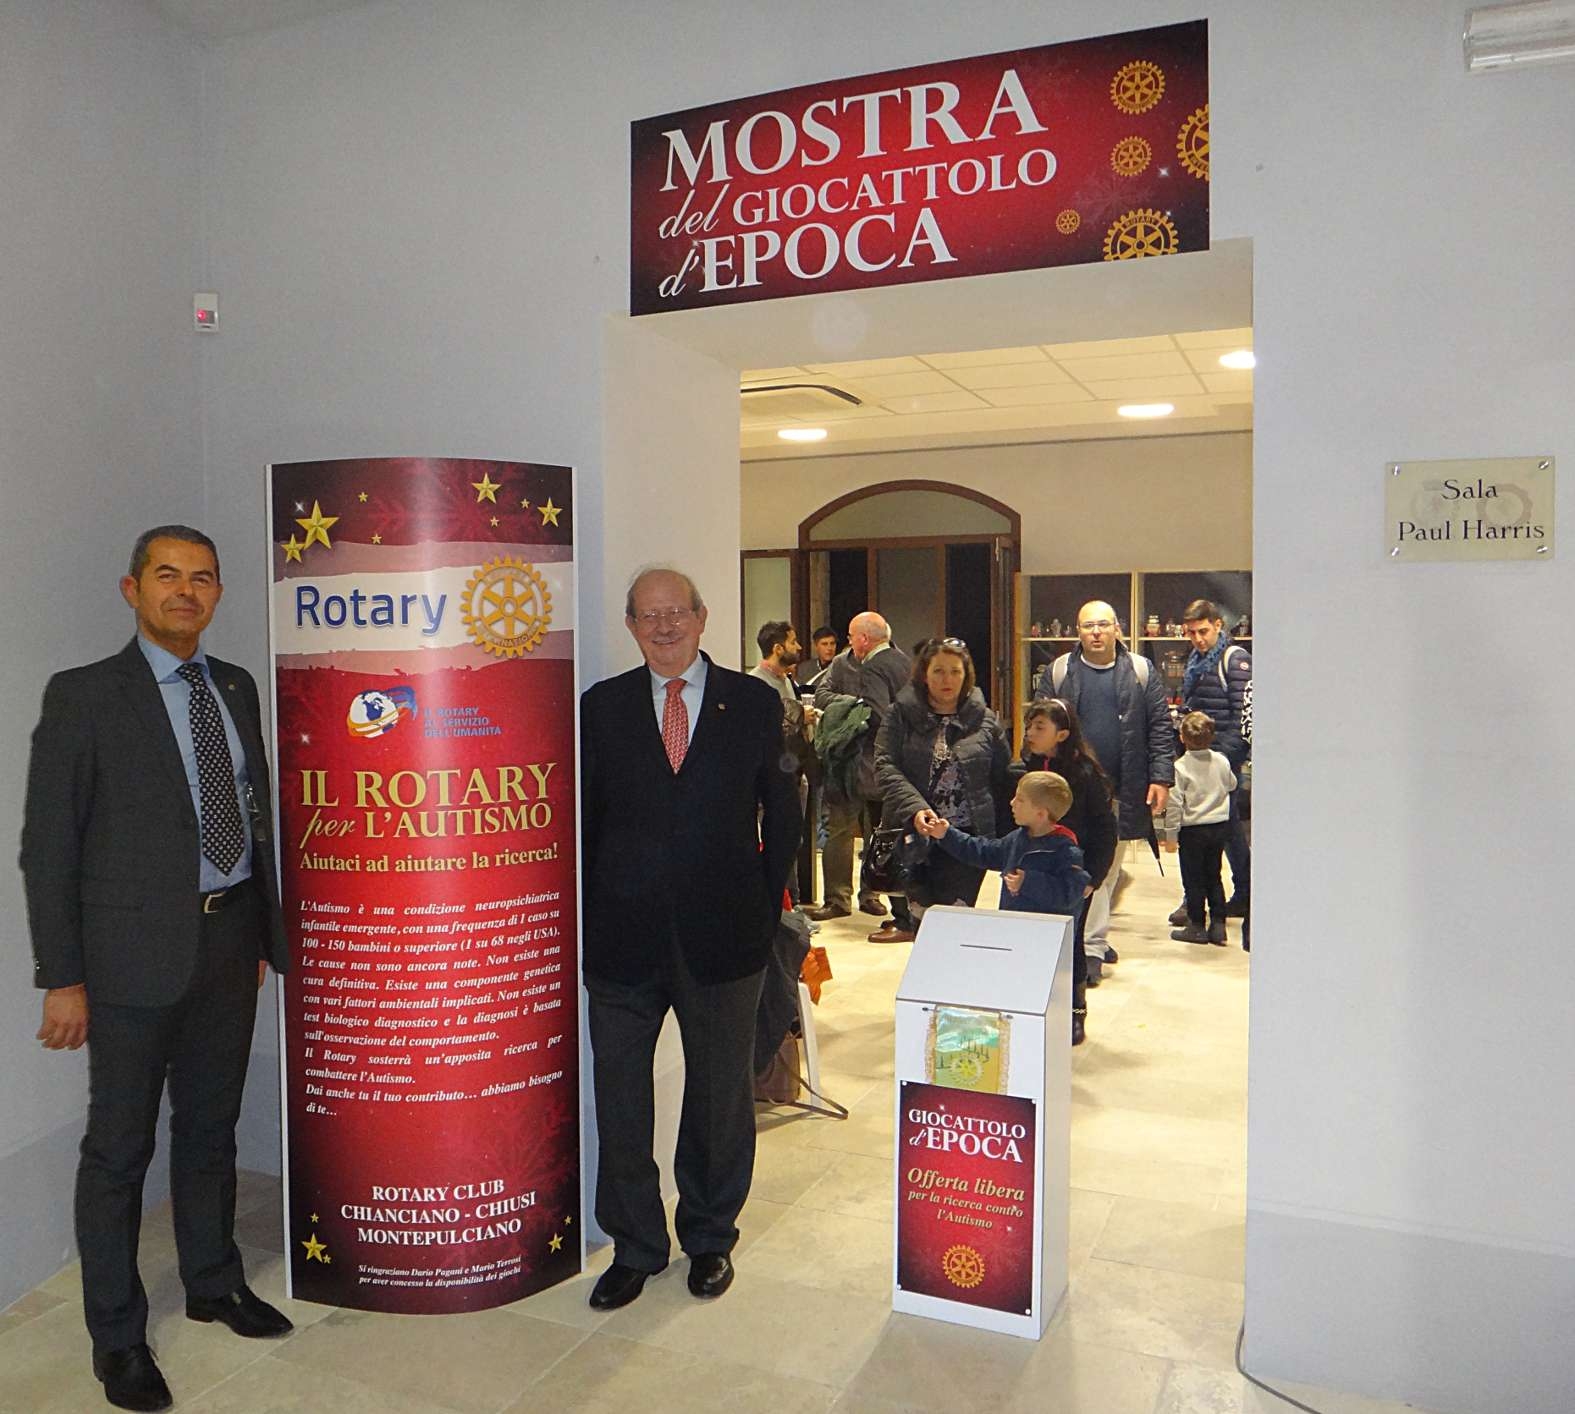 Giocattoli antichi in mostra a Montepulciano, esposizione promossa dal Rotary